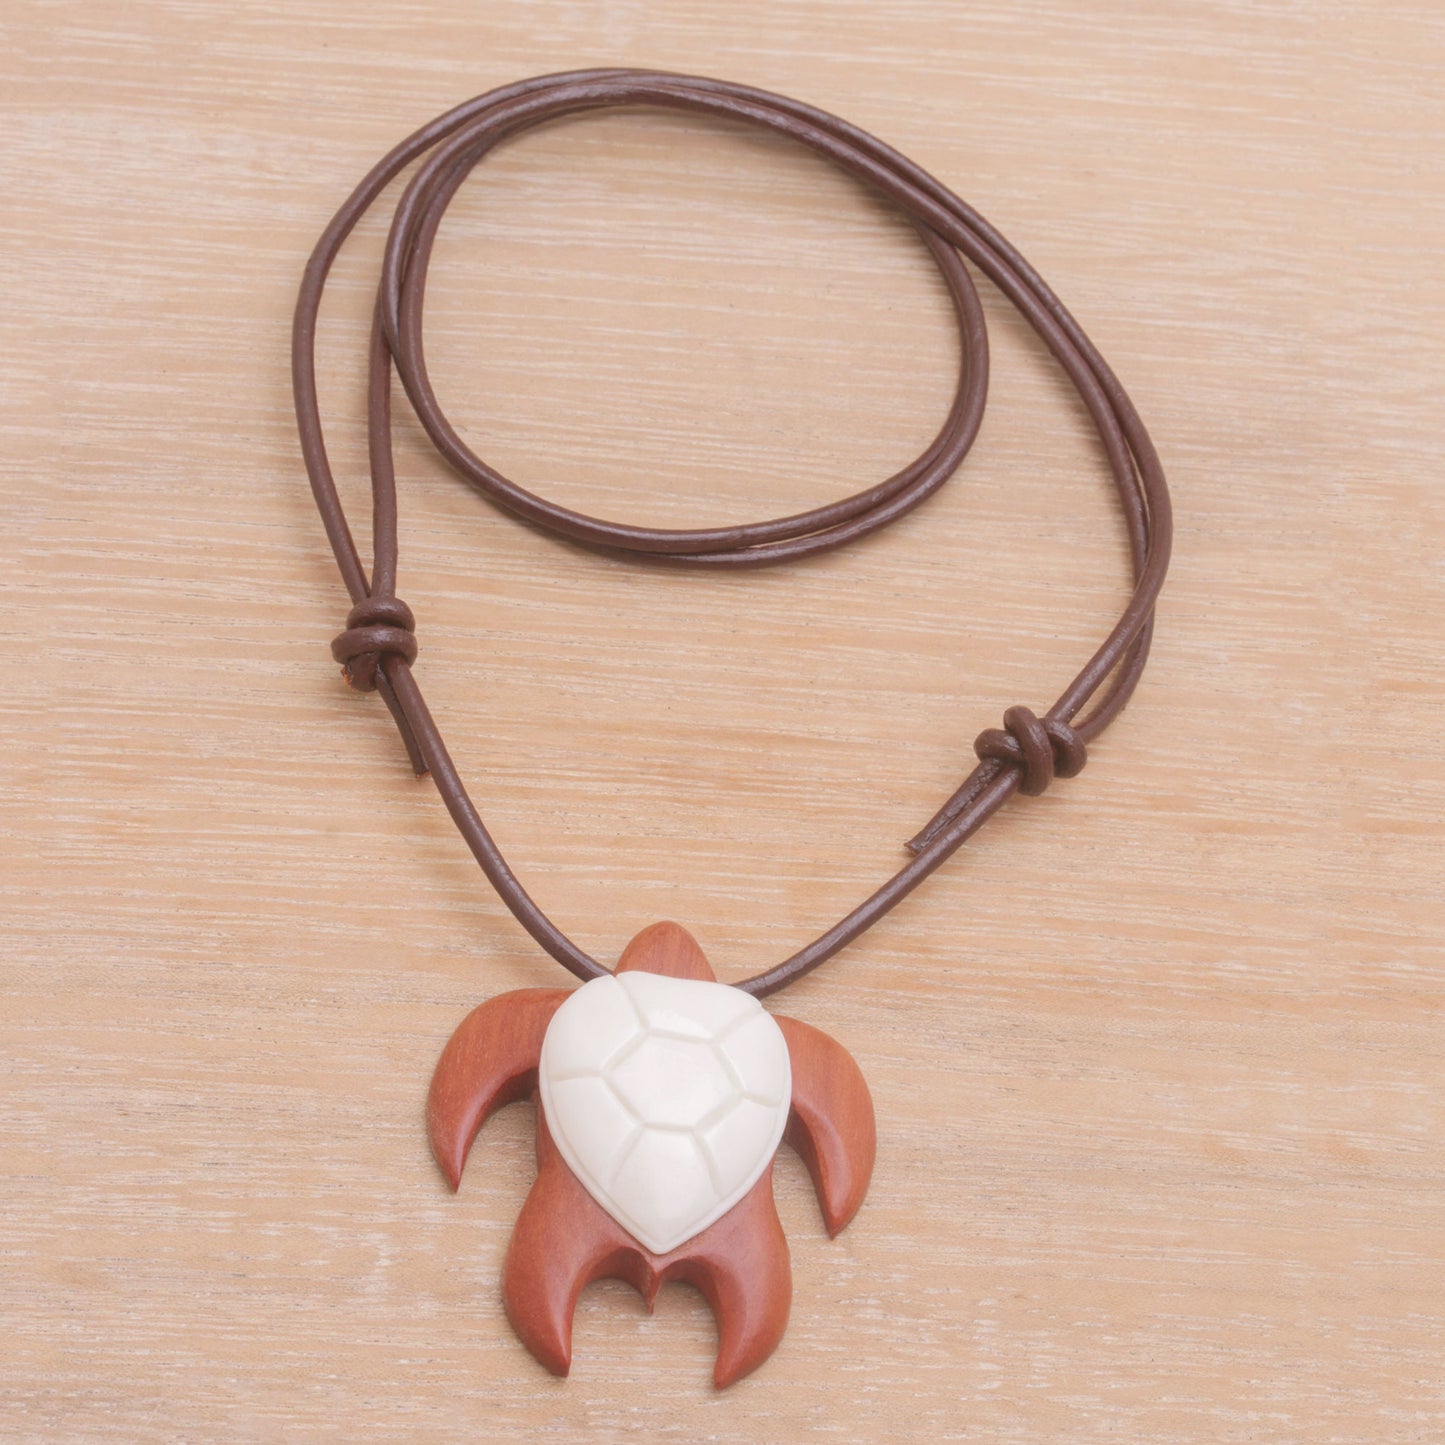 Cow Bone & Wood Turtle Pendant Necklace